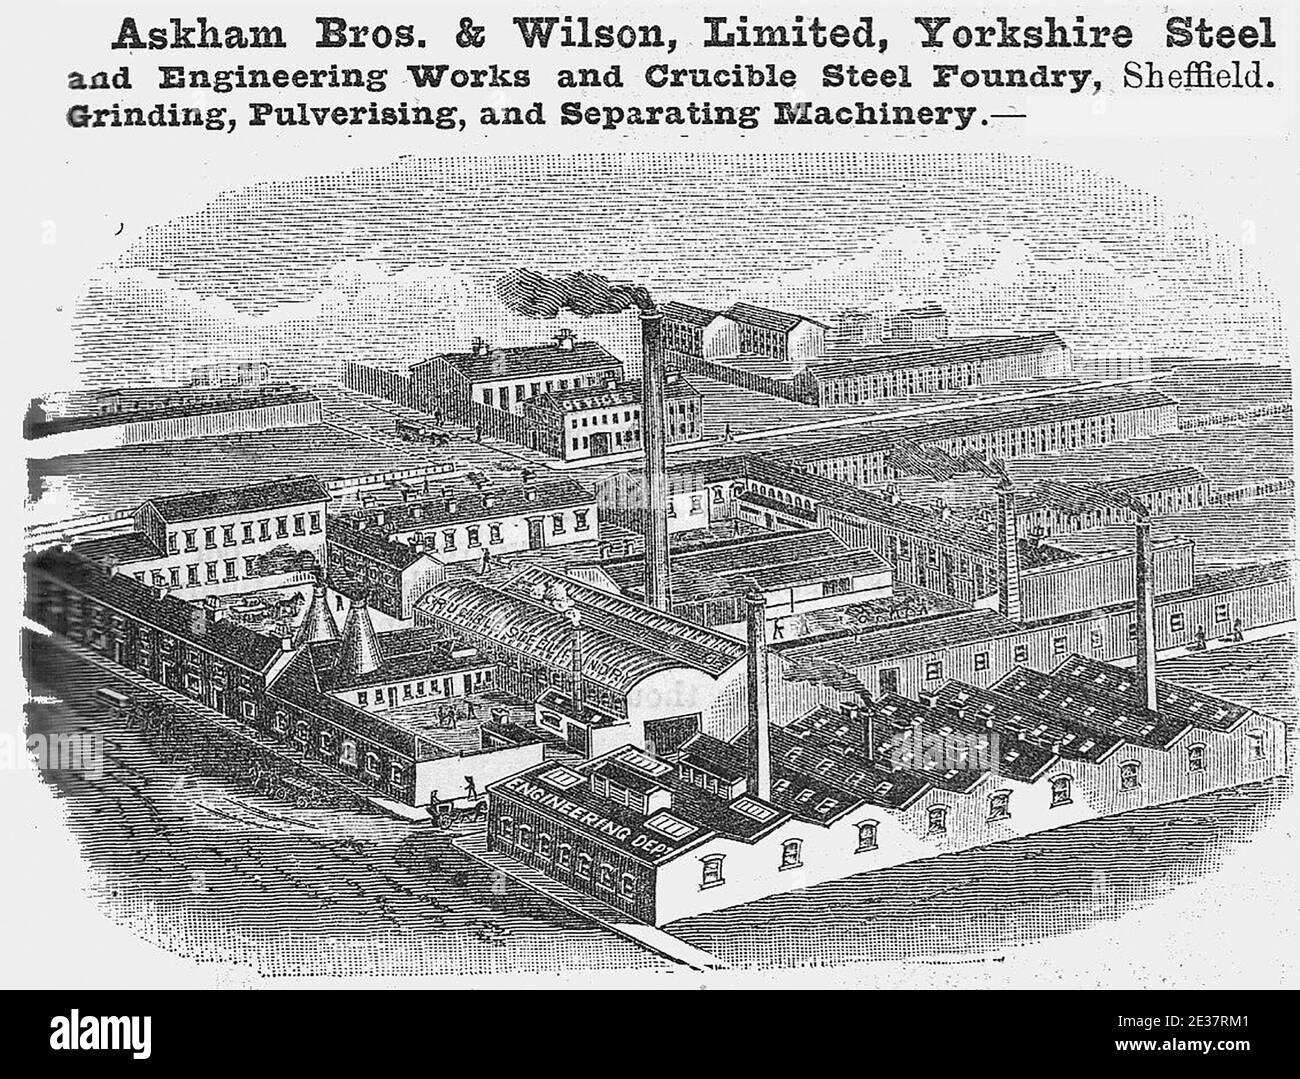 Askham bros and wilson, Limited, Steel and Engineering Works and ticible steel foundry, Sheffield, Yorkshire, UK eine Radierung, Gravur oder Lithographie aus der viktorianischen Zeit. Stockfoto